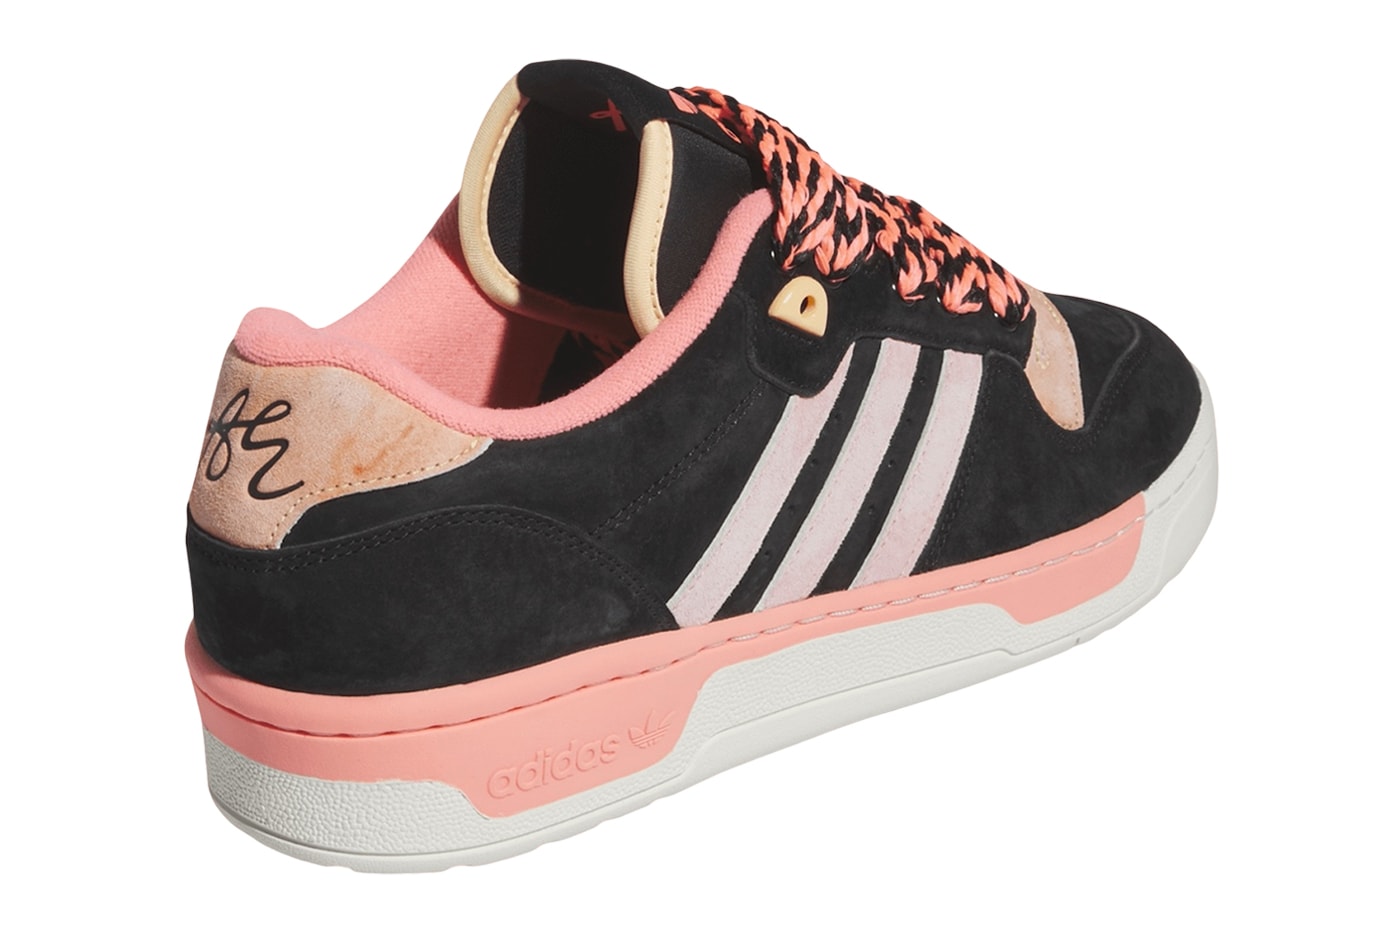 Энтони Эдвардс Появились последние кроссовки Adidas Rivalry IH7729, выпущенные кроссовки для скейтбординга розового и черного цвета с тремя полосками